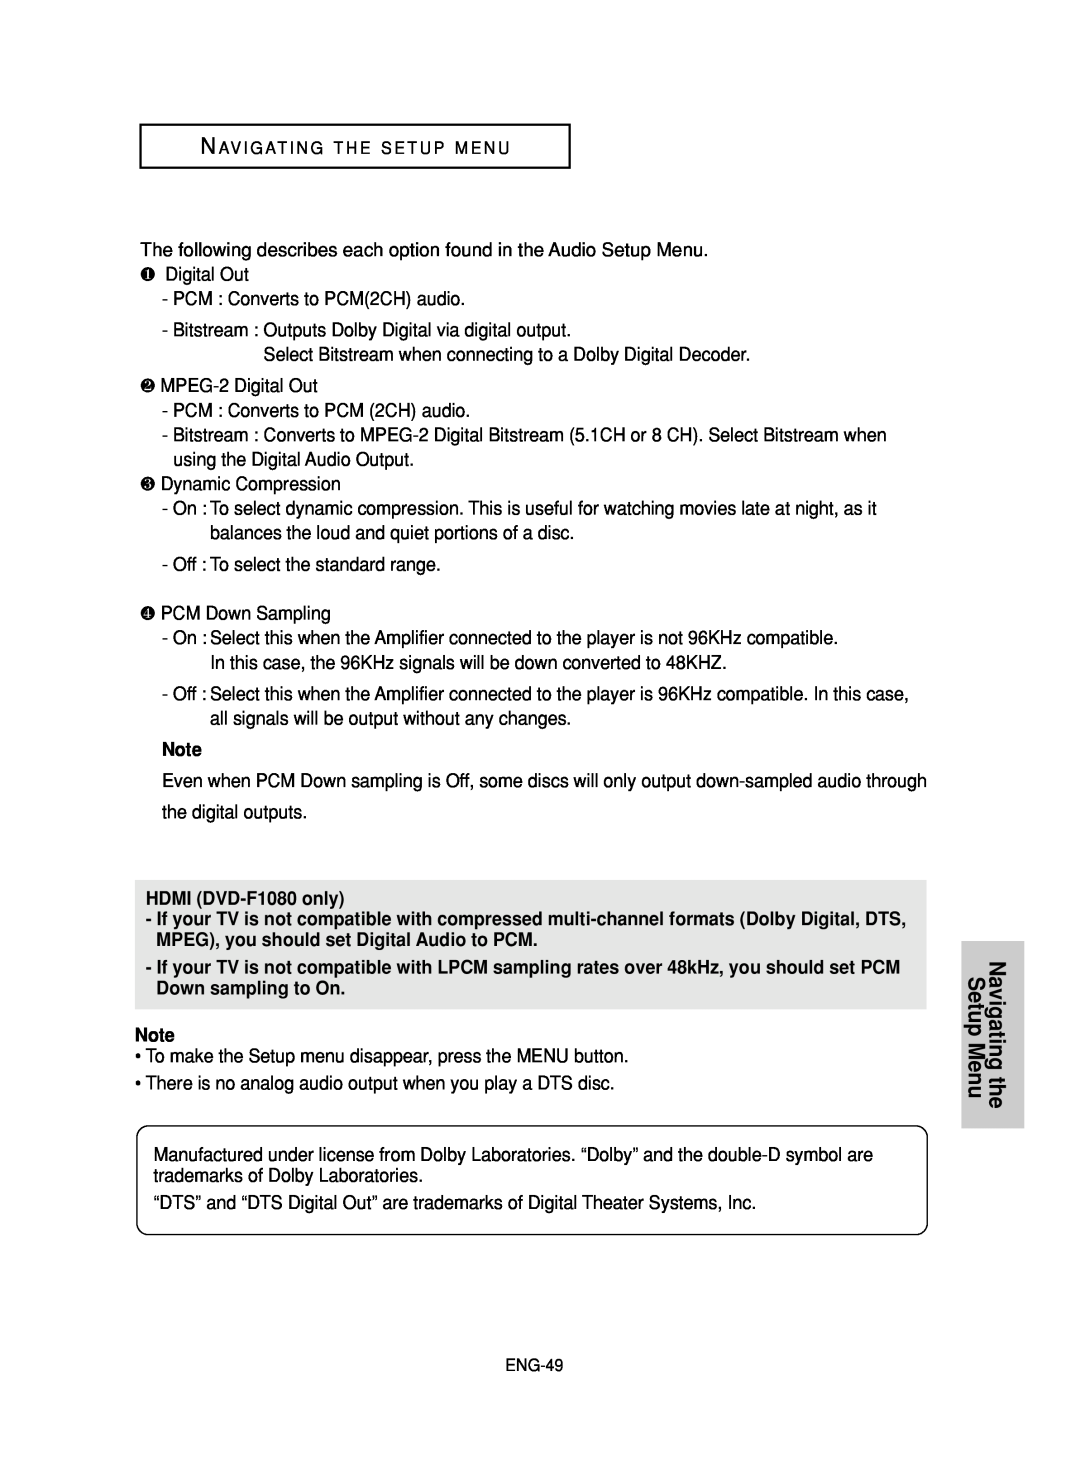 Samsung DVD-FP580 manual Navigating the Setup Menu, HDMI DVD-F1080 only 